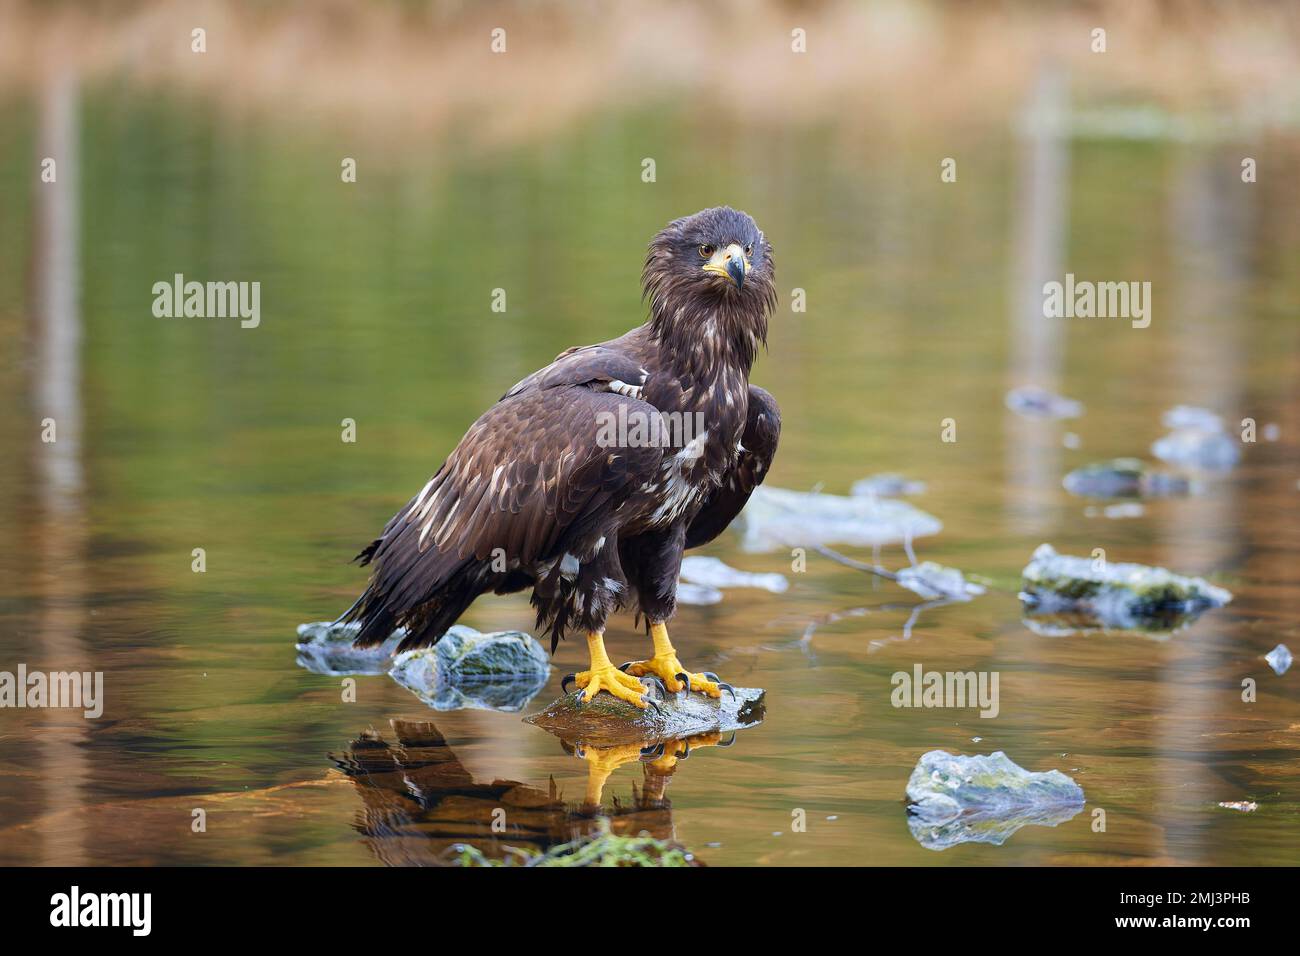 White-tailed eagle (Haliaeetus albicilla), sitting on stone in lake Stock Photo